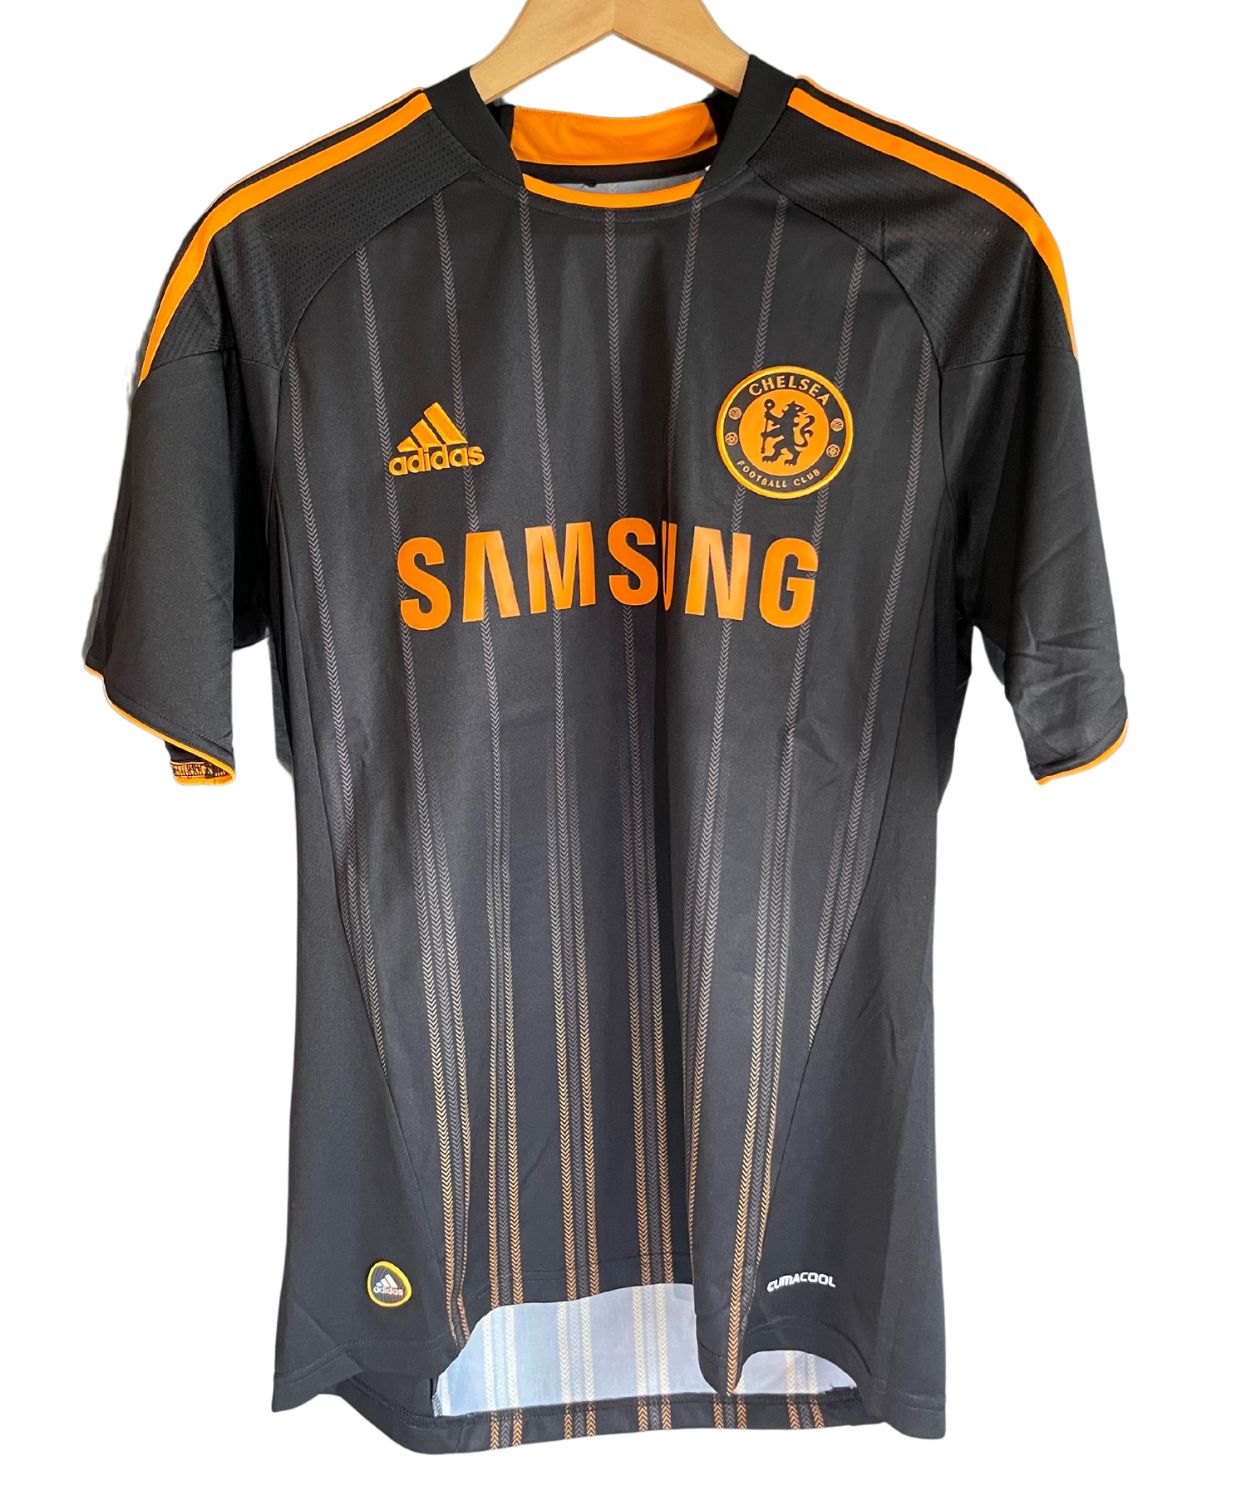 Chelsea FC 2010/11 Anelka Away Kit (S)